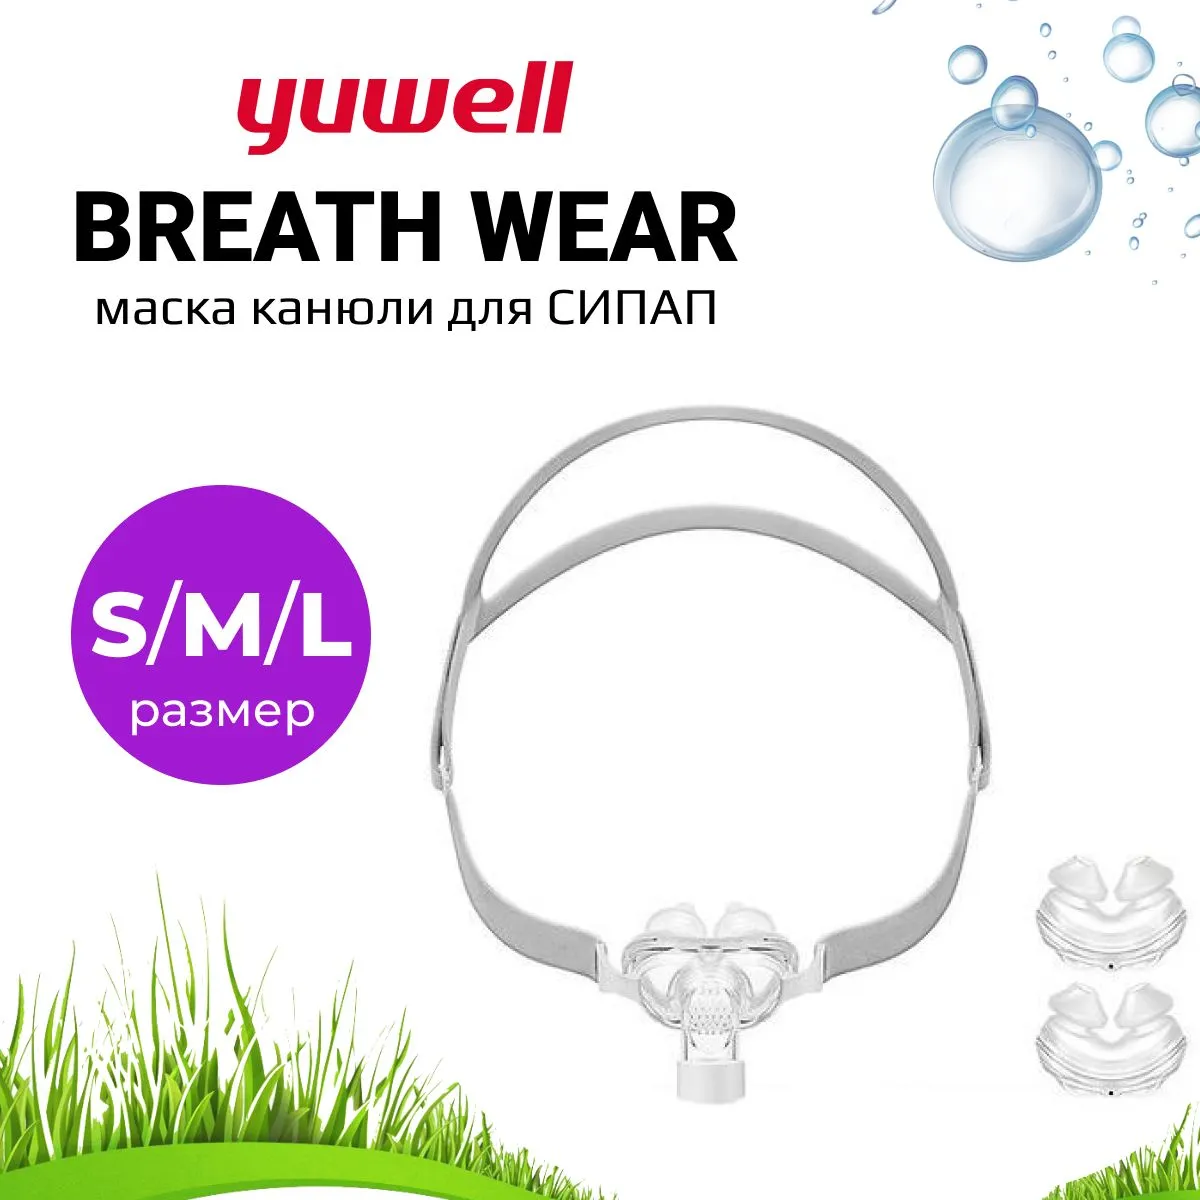 Маска Канюли Yuwell BreathWear Series YP-01 (S-M-L) для СИПАП